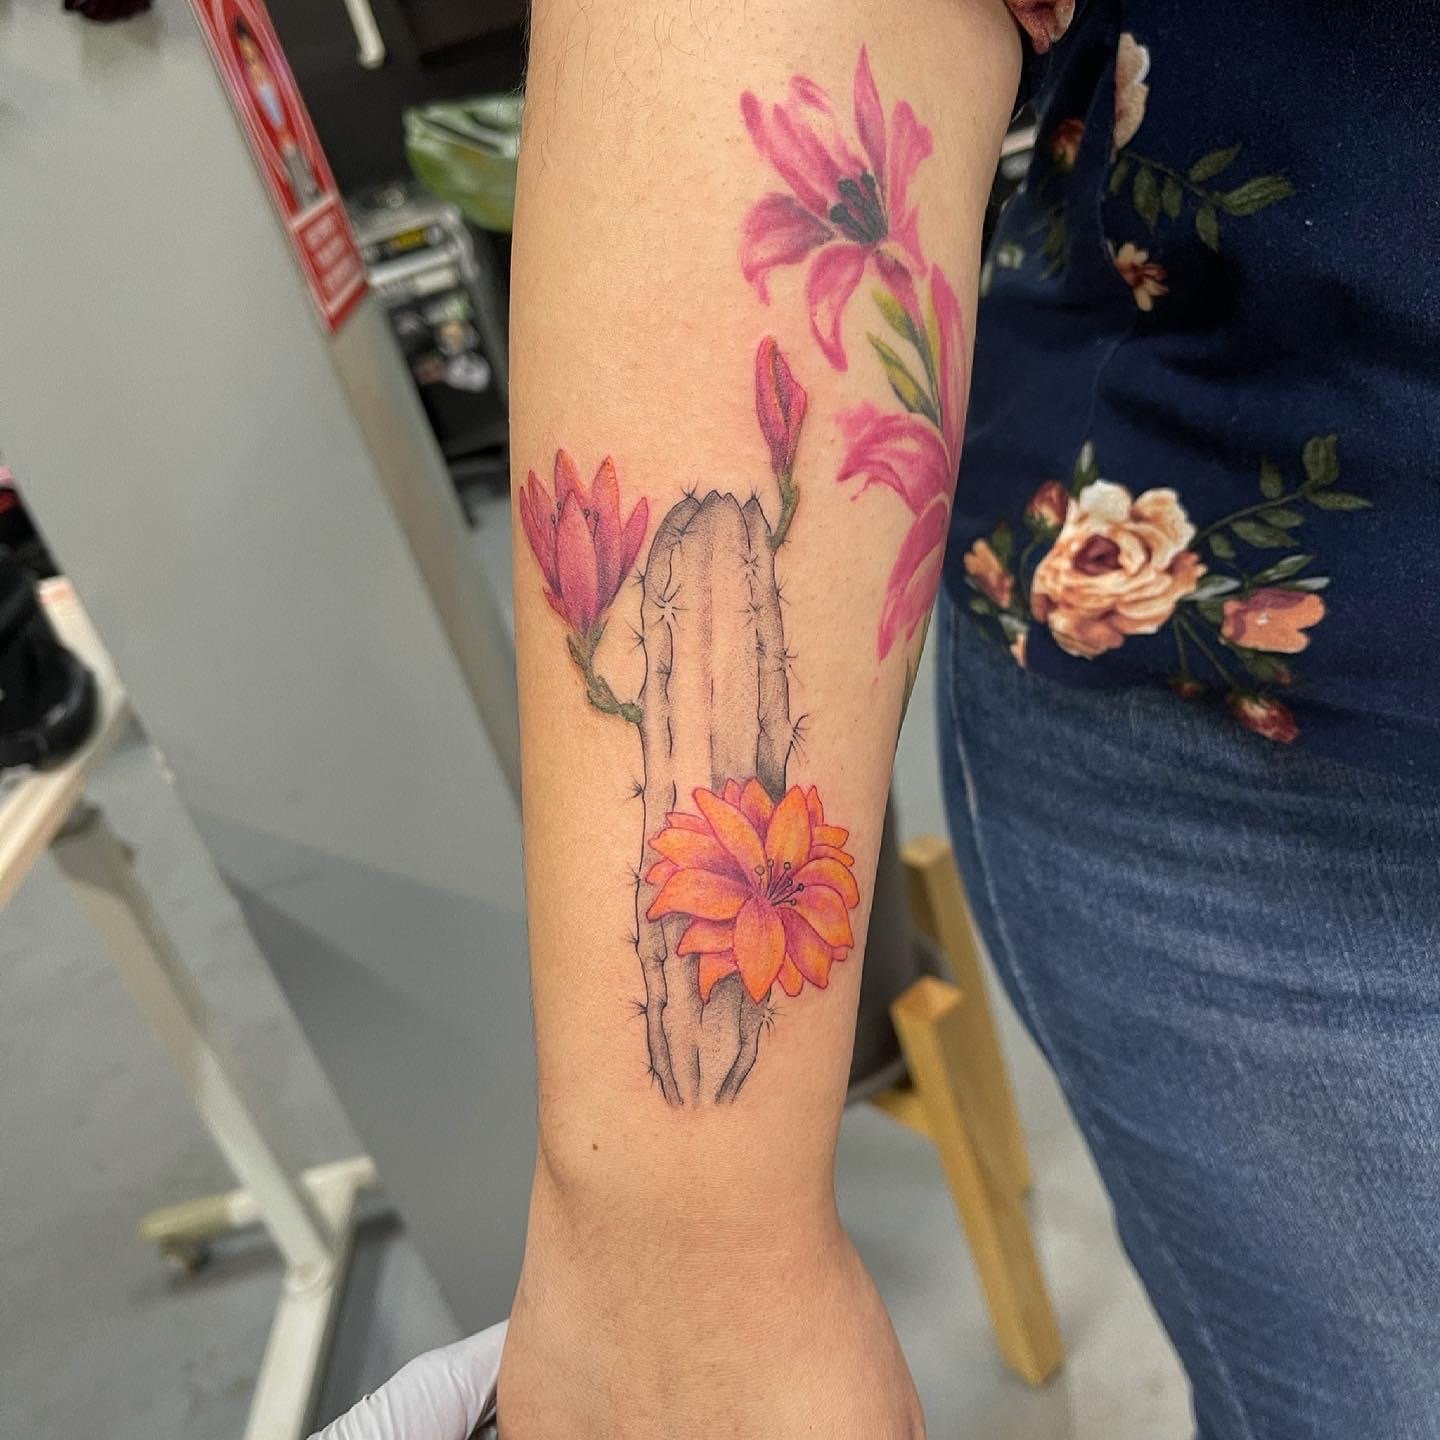 Antebrazo derecho tatuaje de cactus con tinta negra. El cactus tiene flores de color naranja y rosa. Tatuadores de HErmosillo